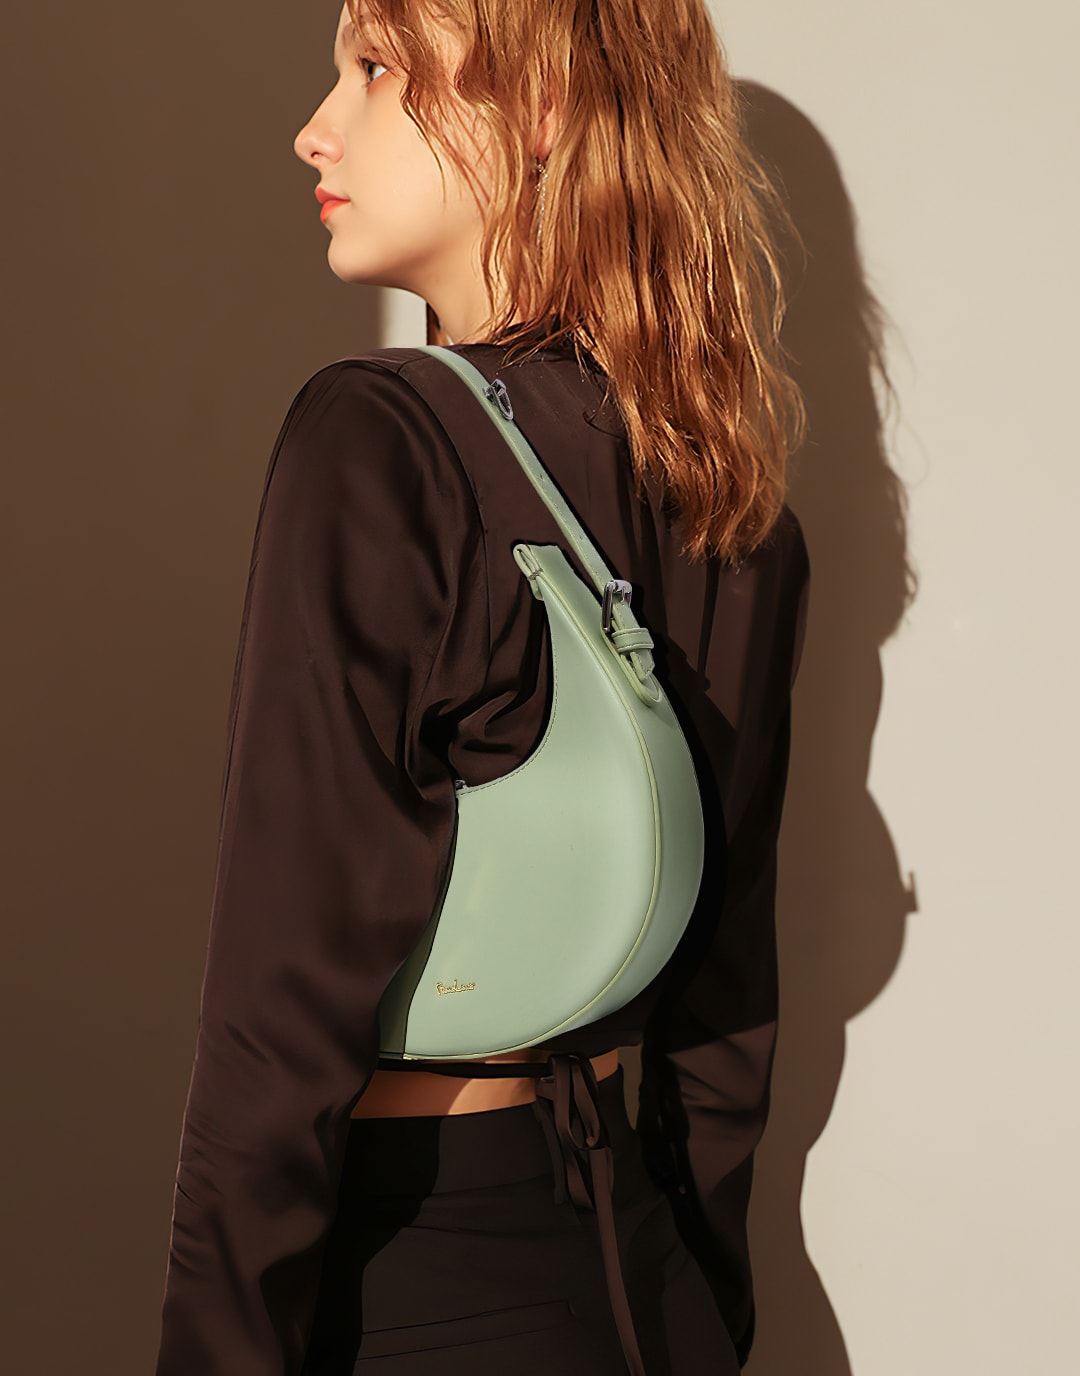 Crescent Leather Small Bag Underarm Bag Moon Bag Portable Shoulder Bag